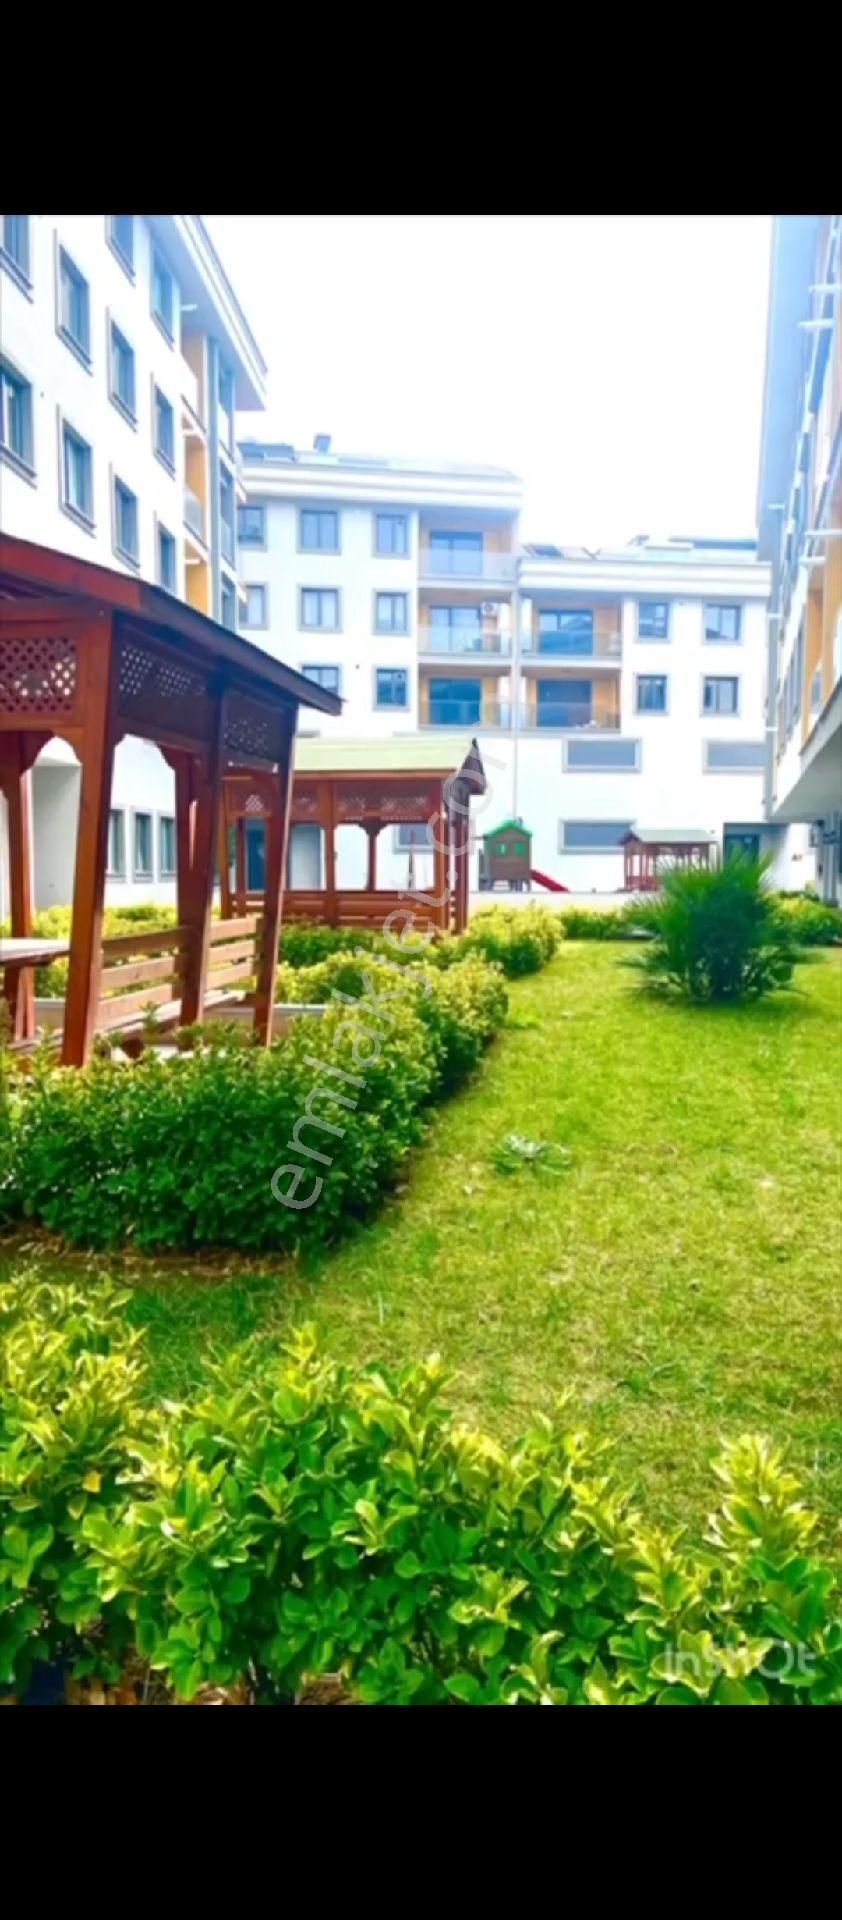 Beylikdüzü Sahil Kiralık Daire Beylikdüzü sahil Mahallesi'nde Deniz İstanbul'a yakın site içerisinde 5+2 dubleks kiralık